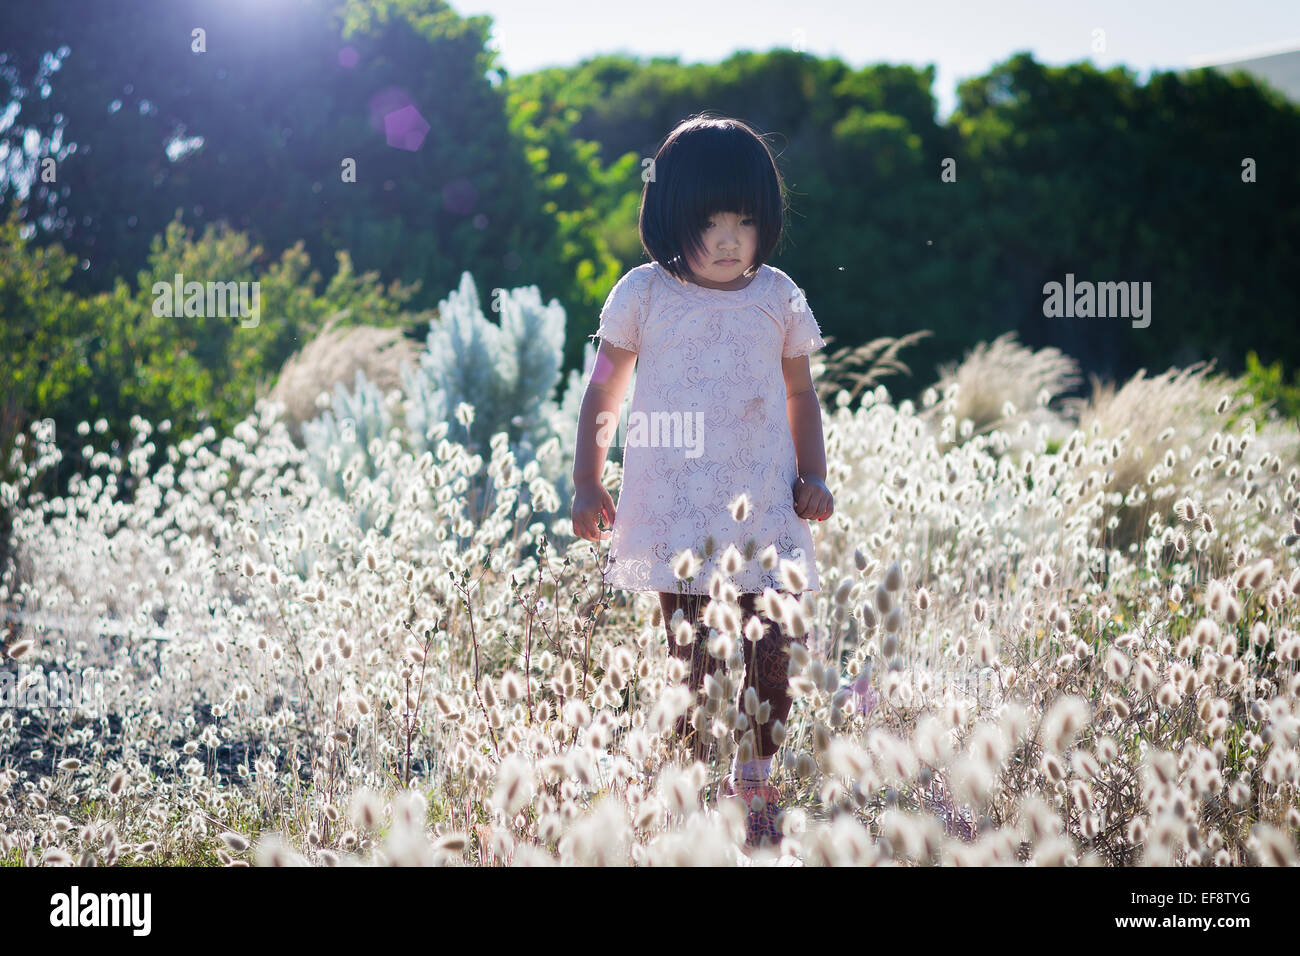 Piccola ragazza indossando abito bianco a piedi in campo con alta fioritura erba, alberi in background Foto Stock